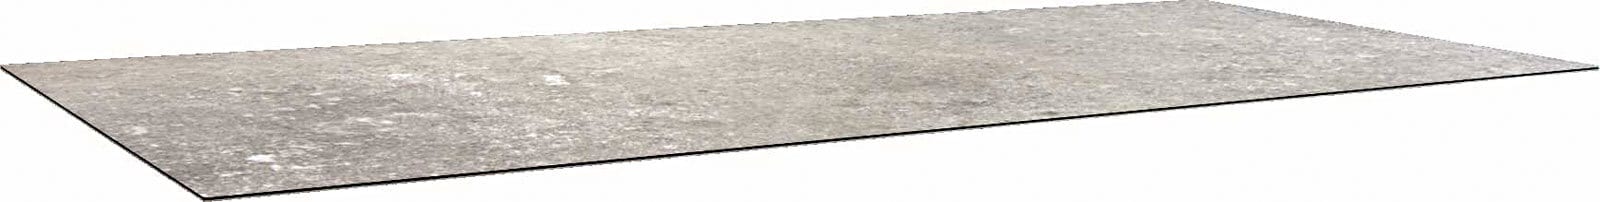 STERN Gartentischplatte SILVERSTAR 2.0 200 x 100 cm Vintage stone